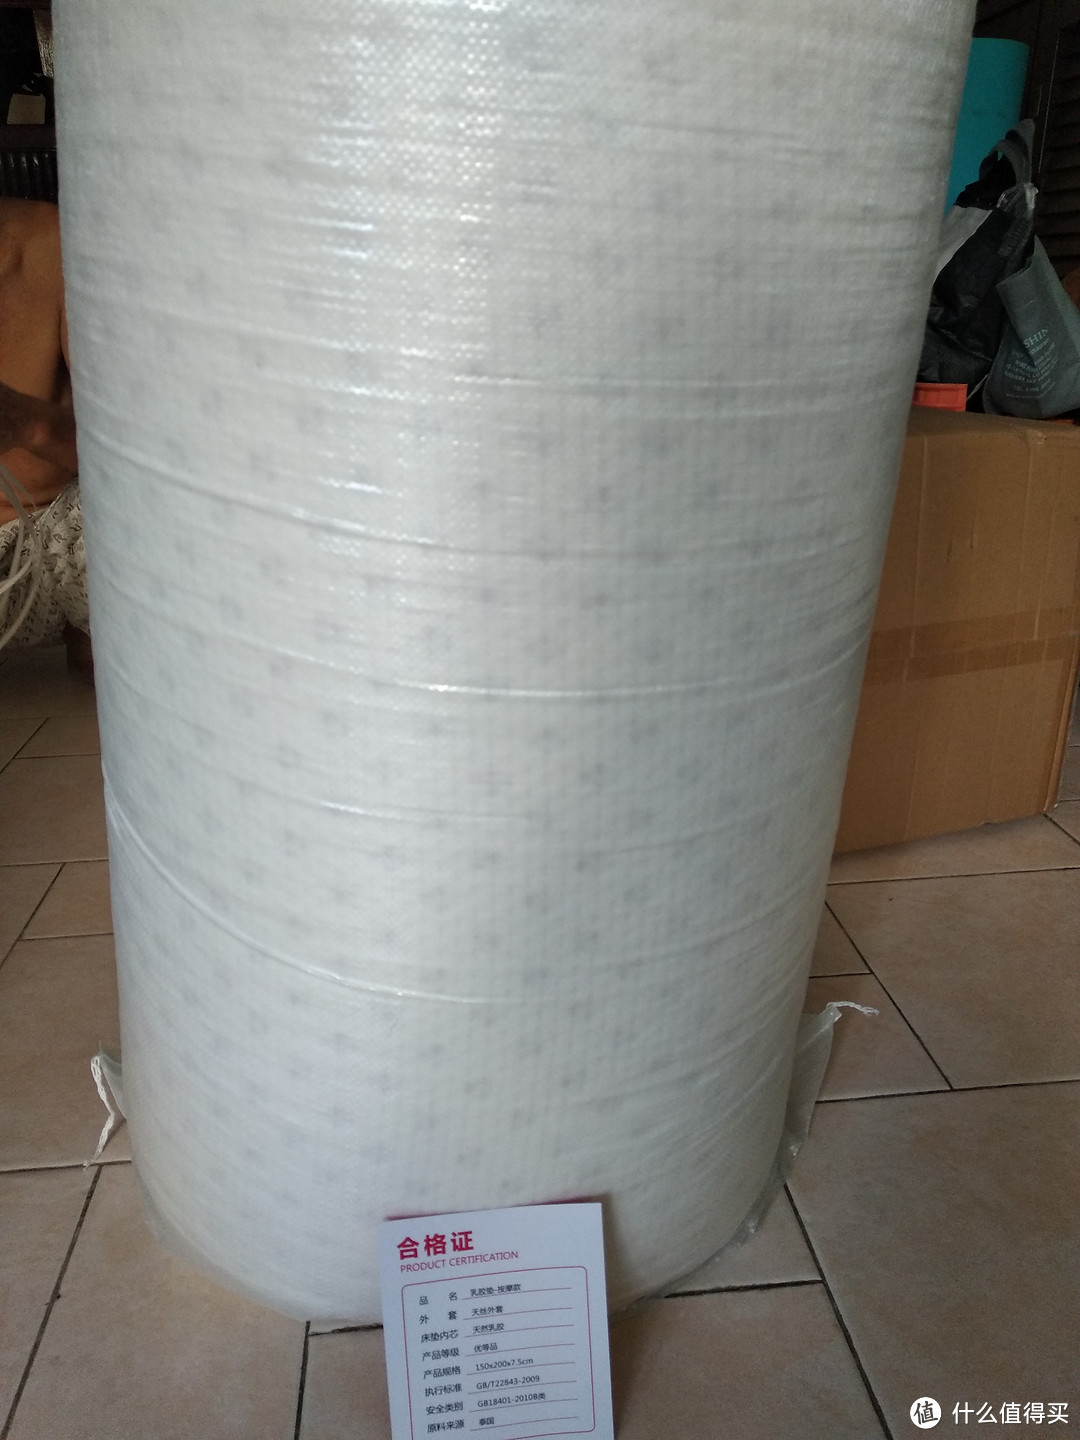 顾家家居床垫 7.5cm泰国进口天然纯乳胶床垫 到货晒物